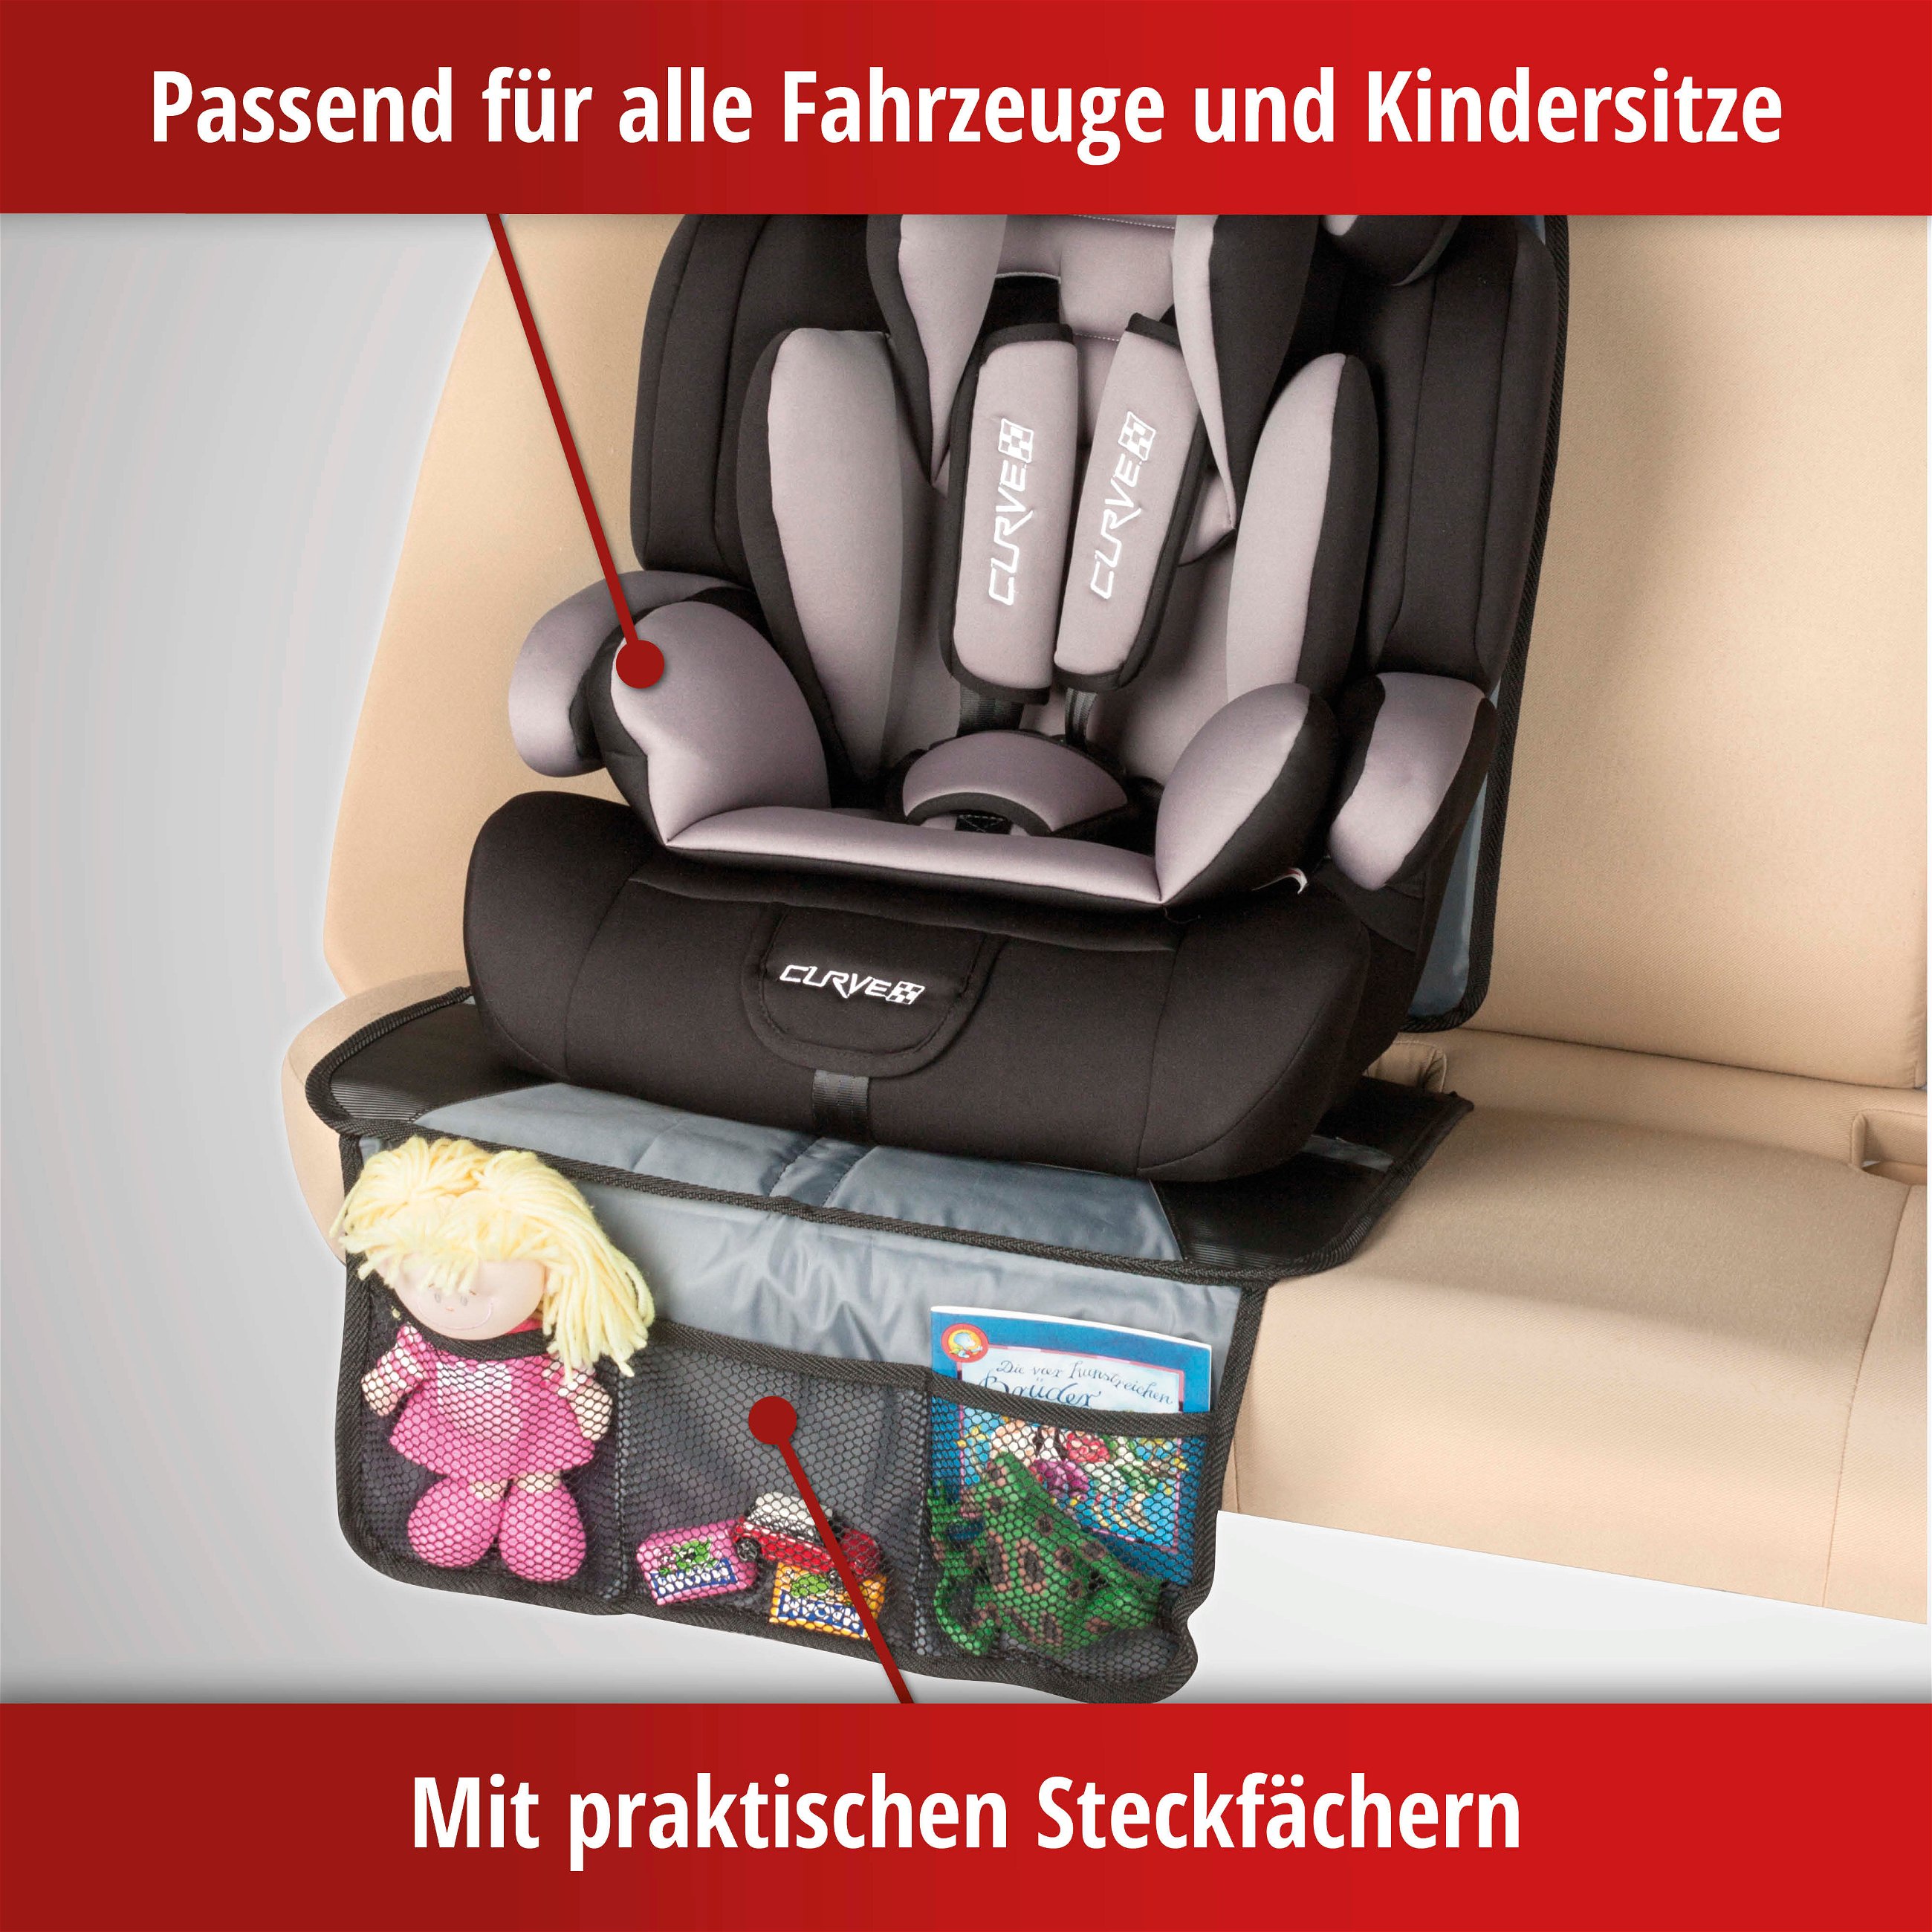 Kindersitzunterlage Tidy Fred XL, Schutzunterlage Kindersitz grau/schwarz